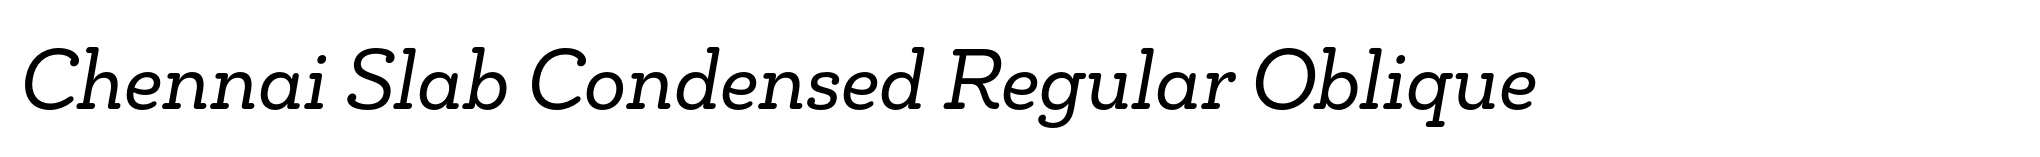 Chennai Slab Condensed Regular Oblique image